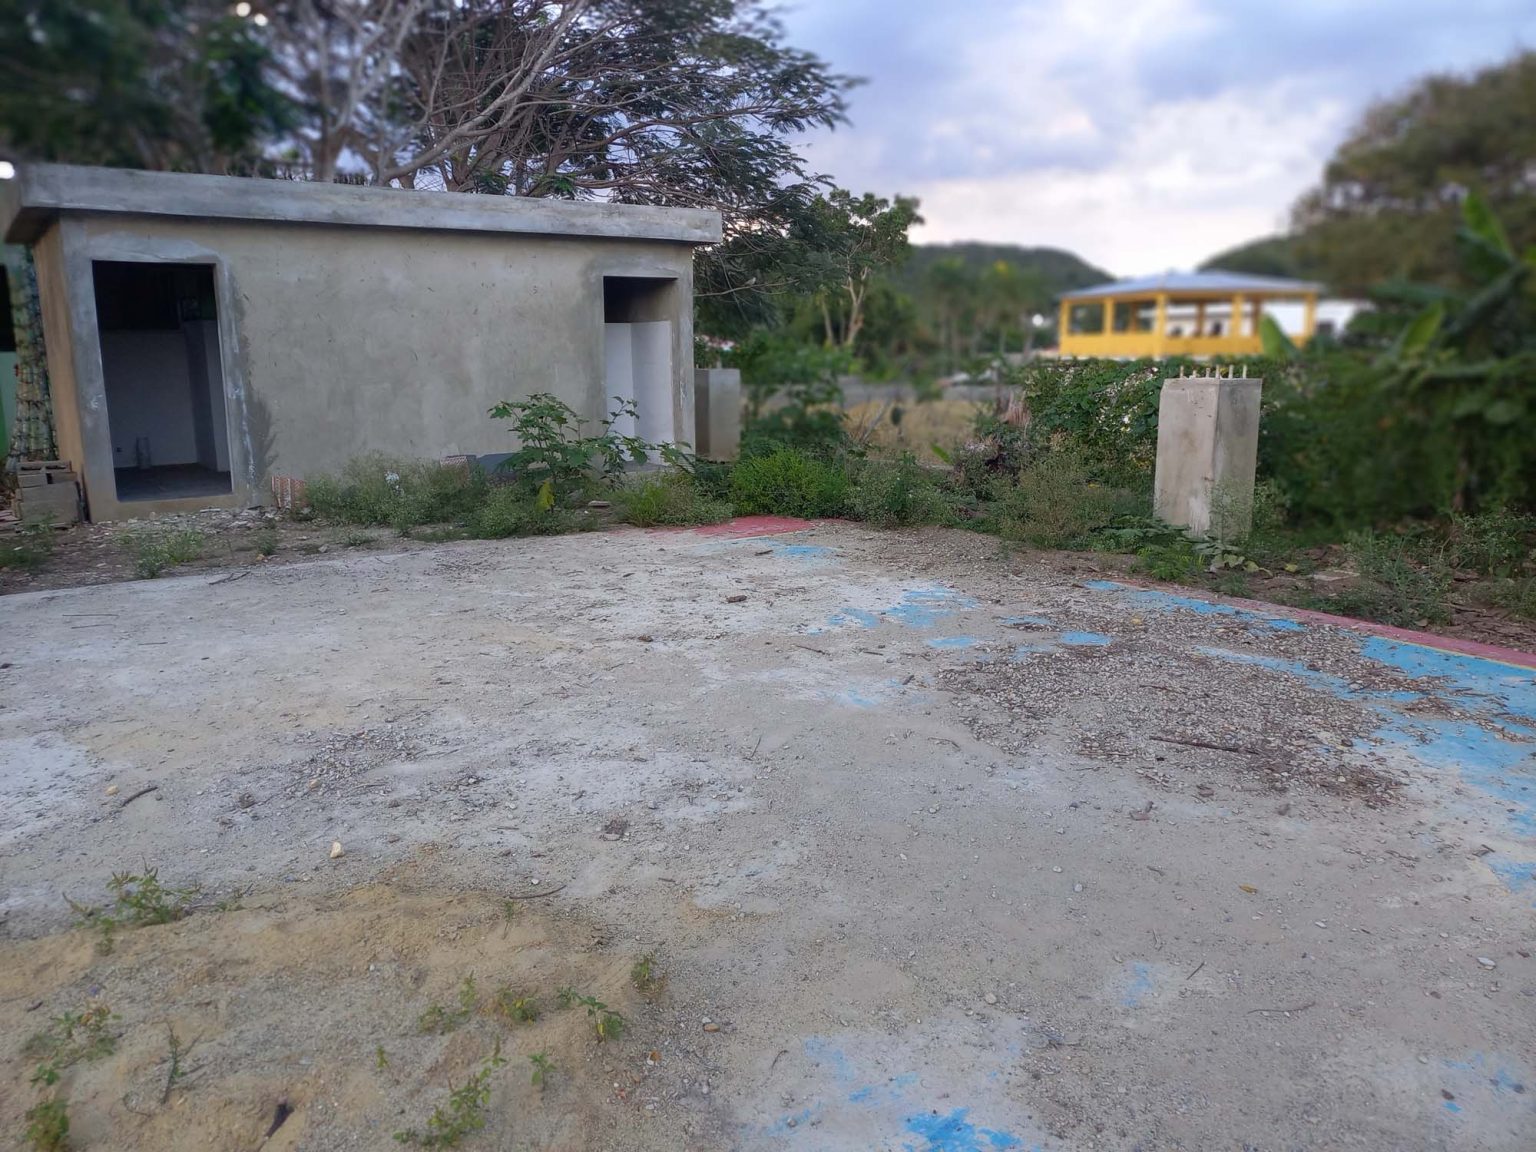 Obras gubernamentales por mas de 400 millones de pesos se encuentran paralizadas en el municipio de Baitoa